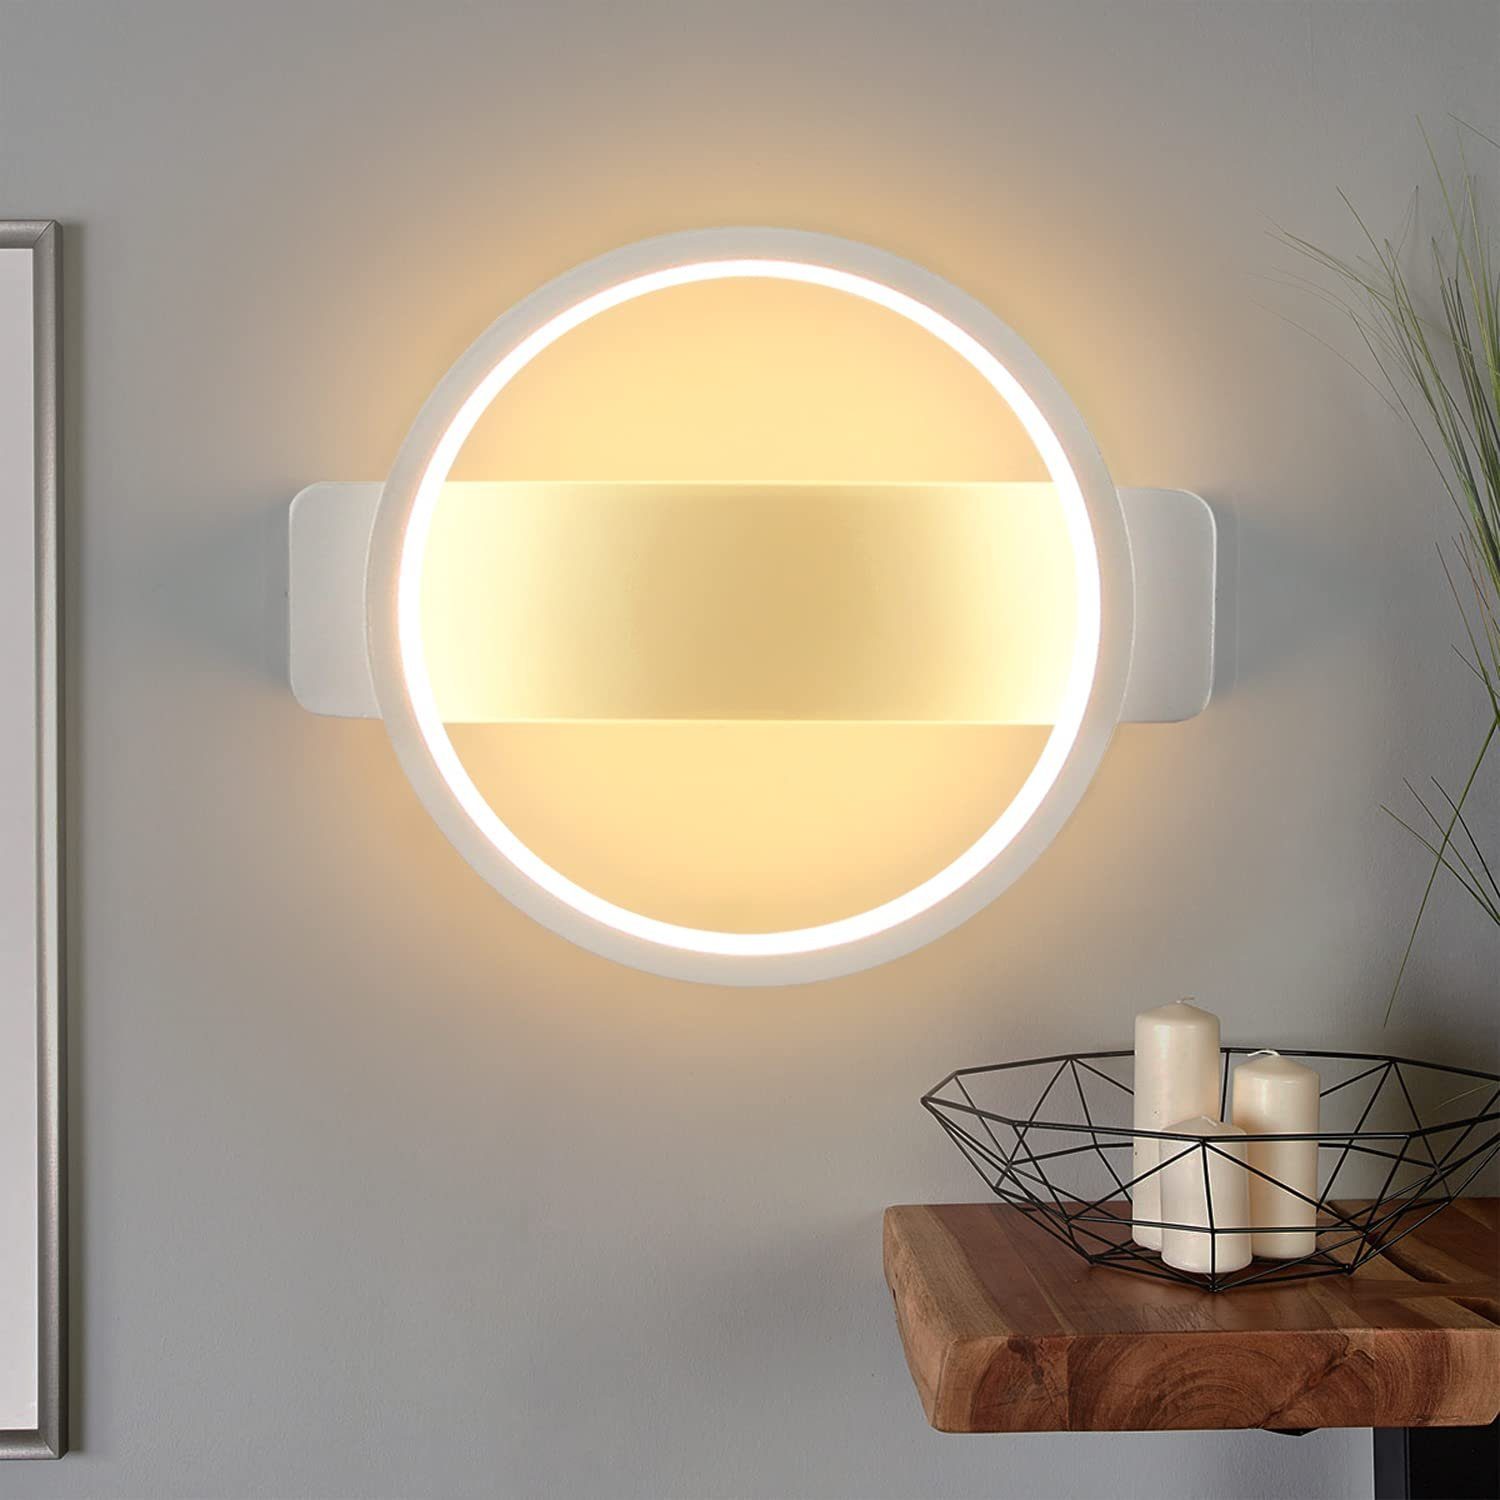 Nettlife LED Wandleuchte Innen Wandlampe Weiß Modern 7W 3000K Wandbeleuchtung, LED fest integriert, Warmweiß, Wohnzimmer Schlafzimmer Küche Treppenhaus Flur